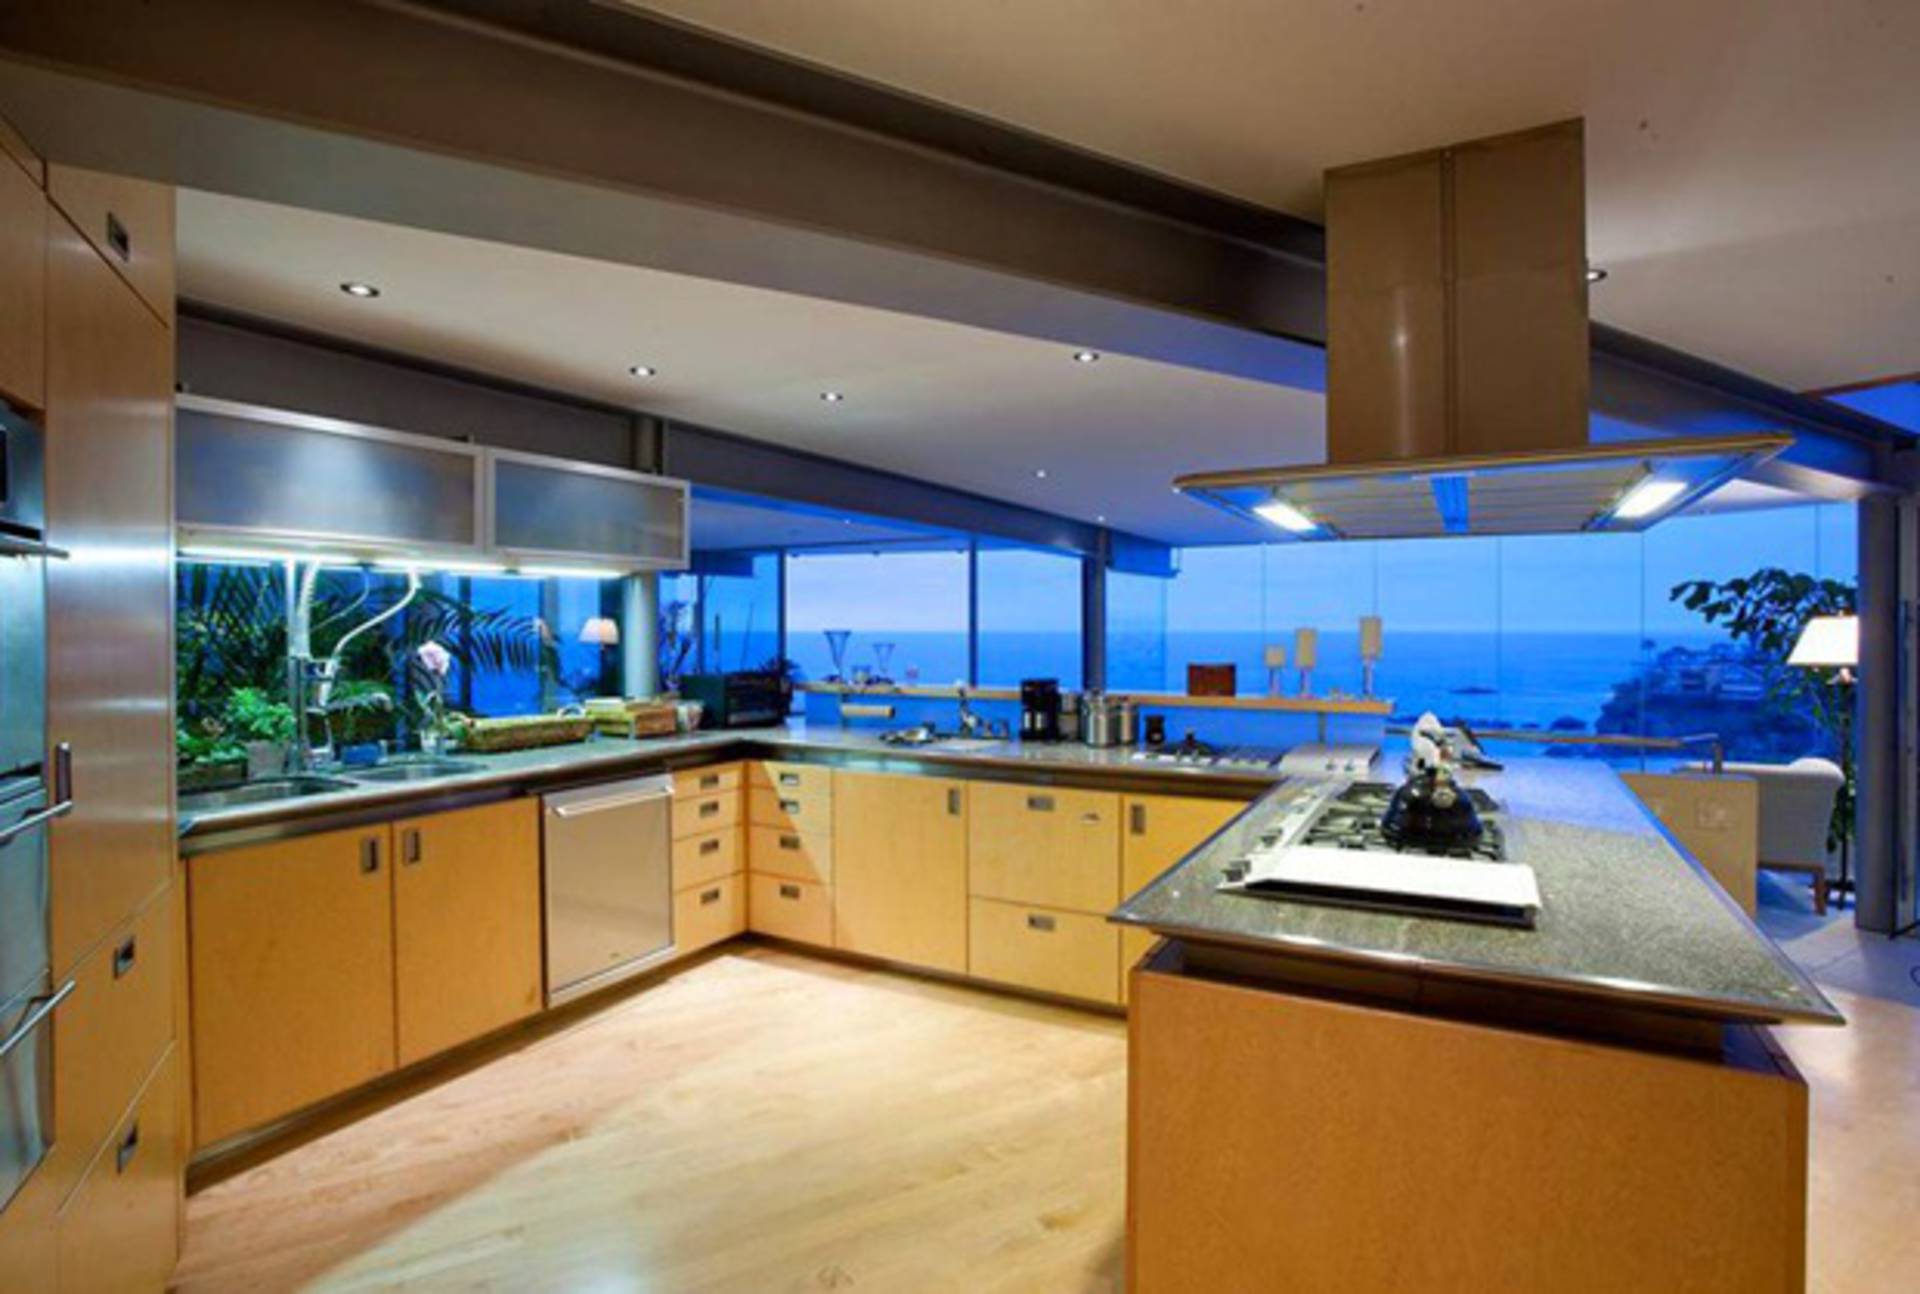 Кухни идеальный дом. Кухня в доме. Современная кухня с панорамными окнами. Кухня мечта. Кухня панорамные окна море.